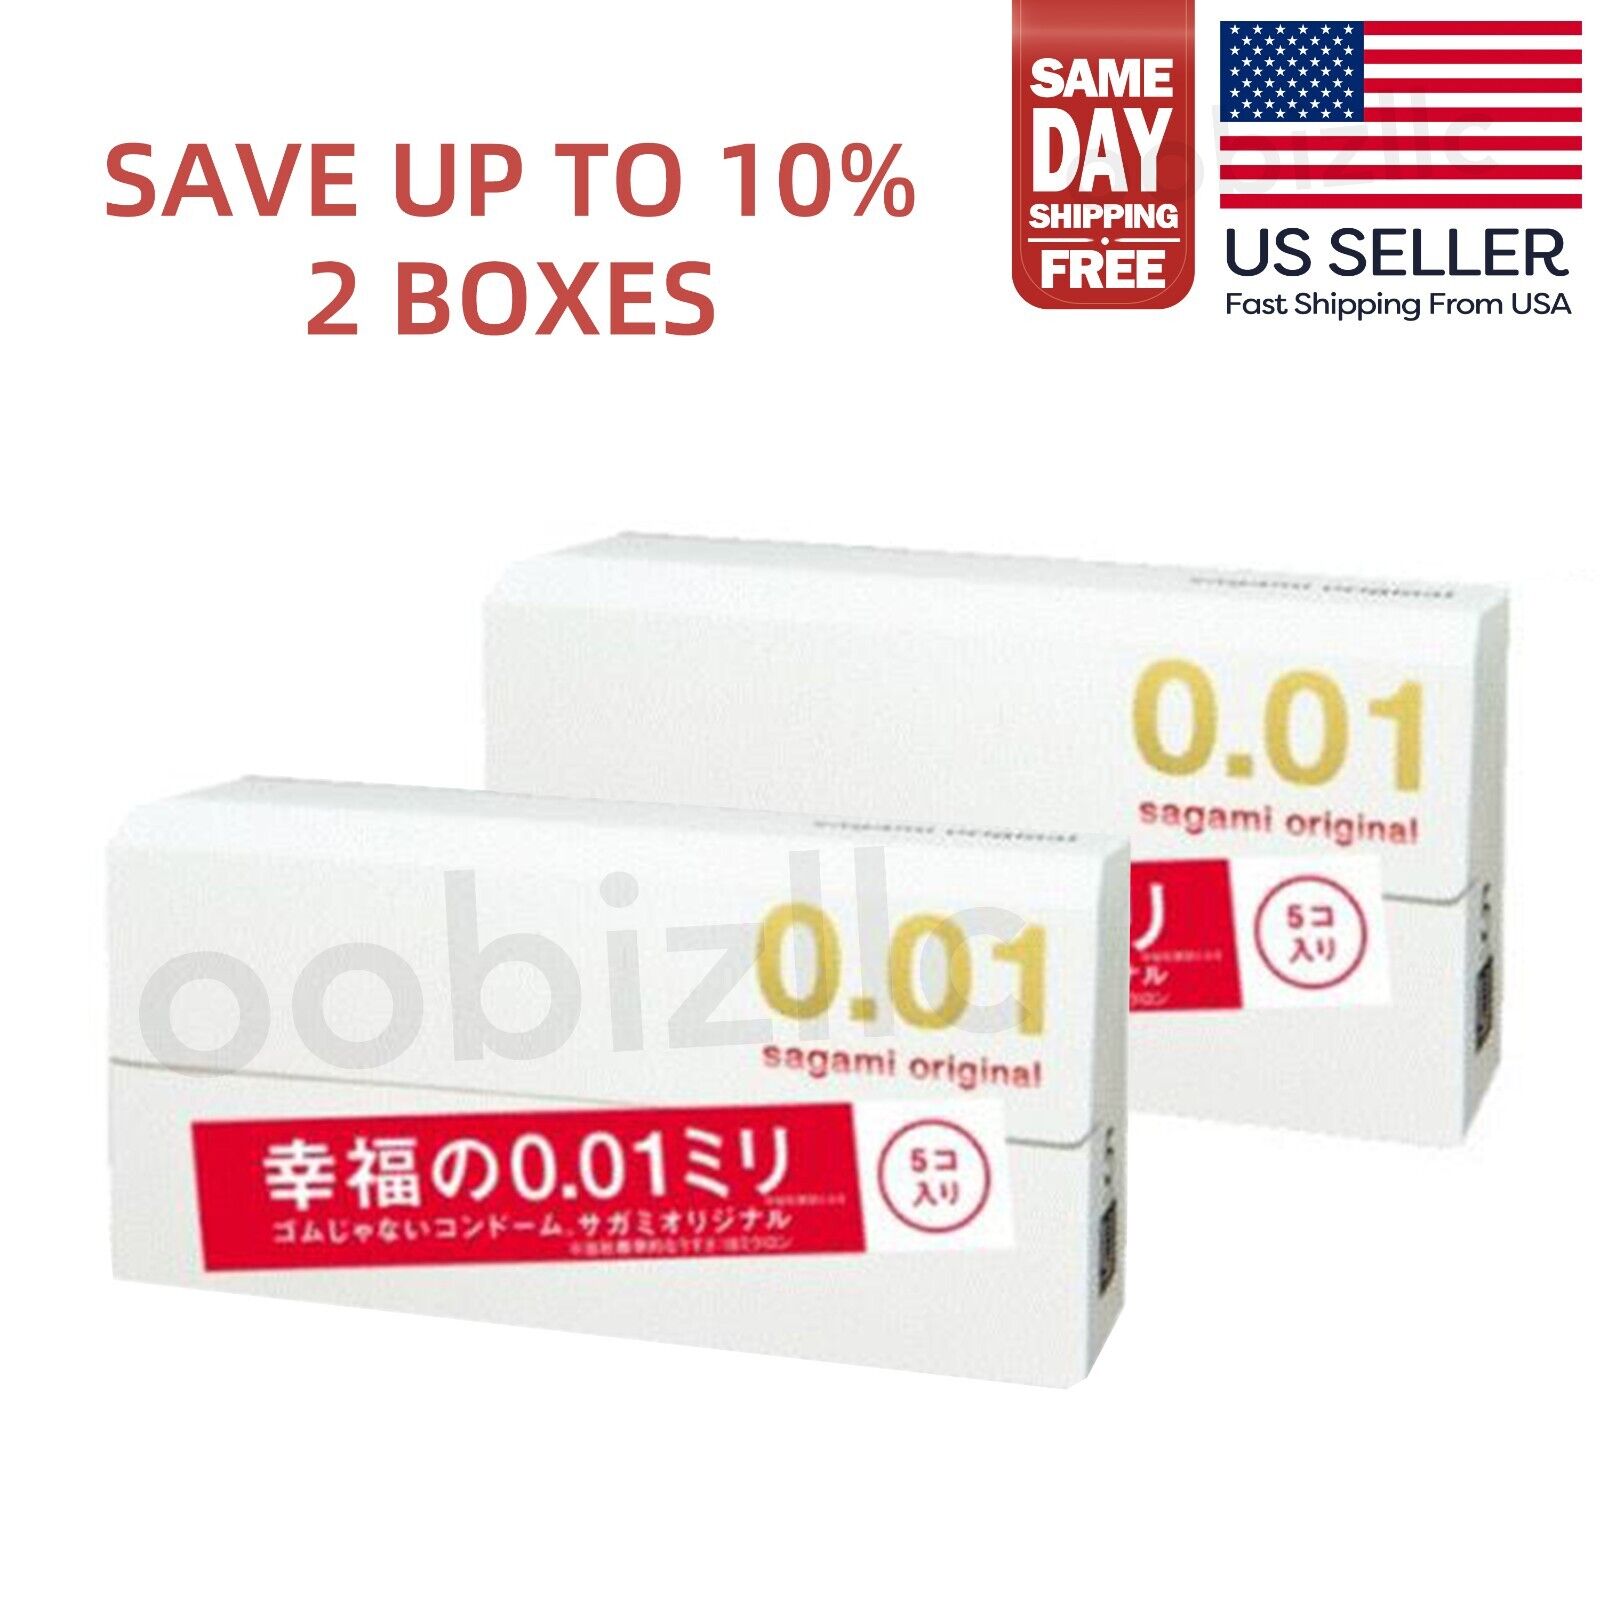 Sagami Original 001 Ultra Thin Condoms 0.01mm 5 Pcs (2 BOXES)- US Seller